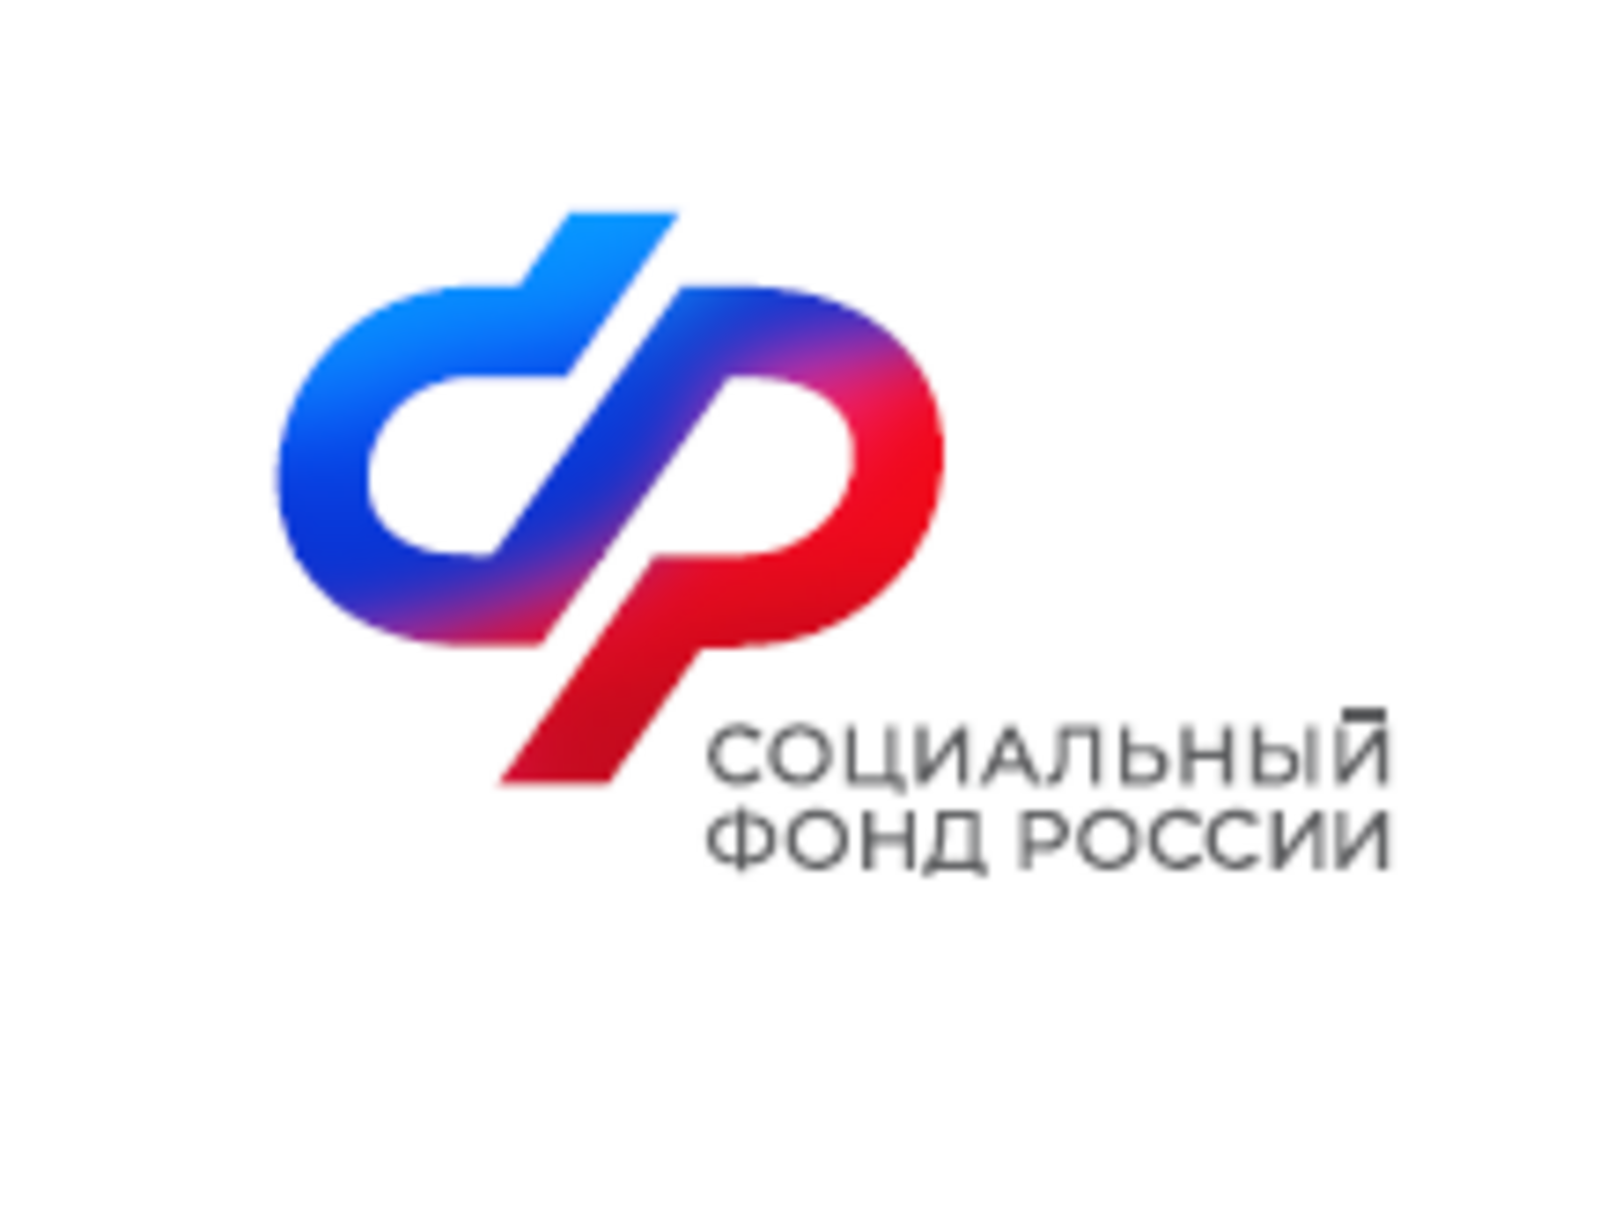 Отделение Социального фонда по Республике Башкортостан напоминает работодателям о необходимости подтверждения основного вида экономической деятельности до 15 апреля